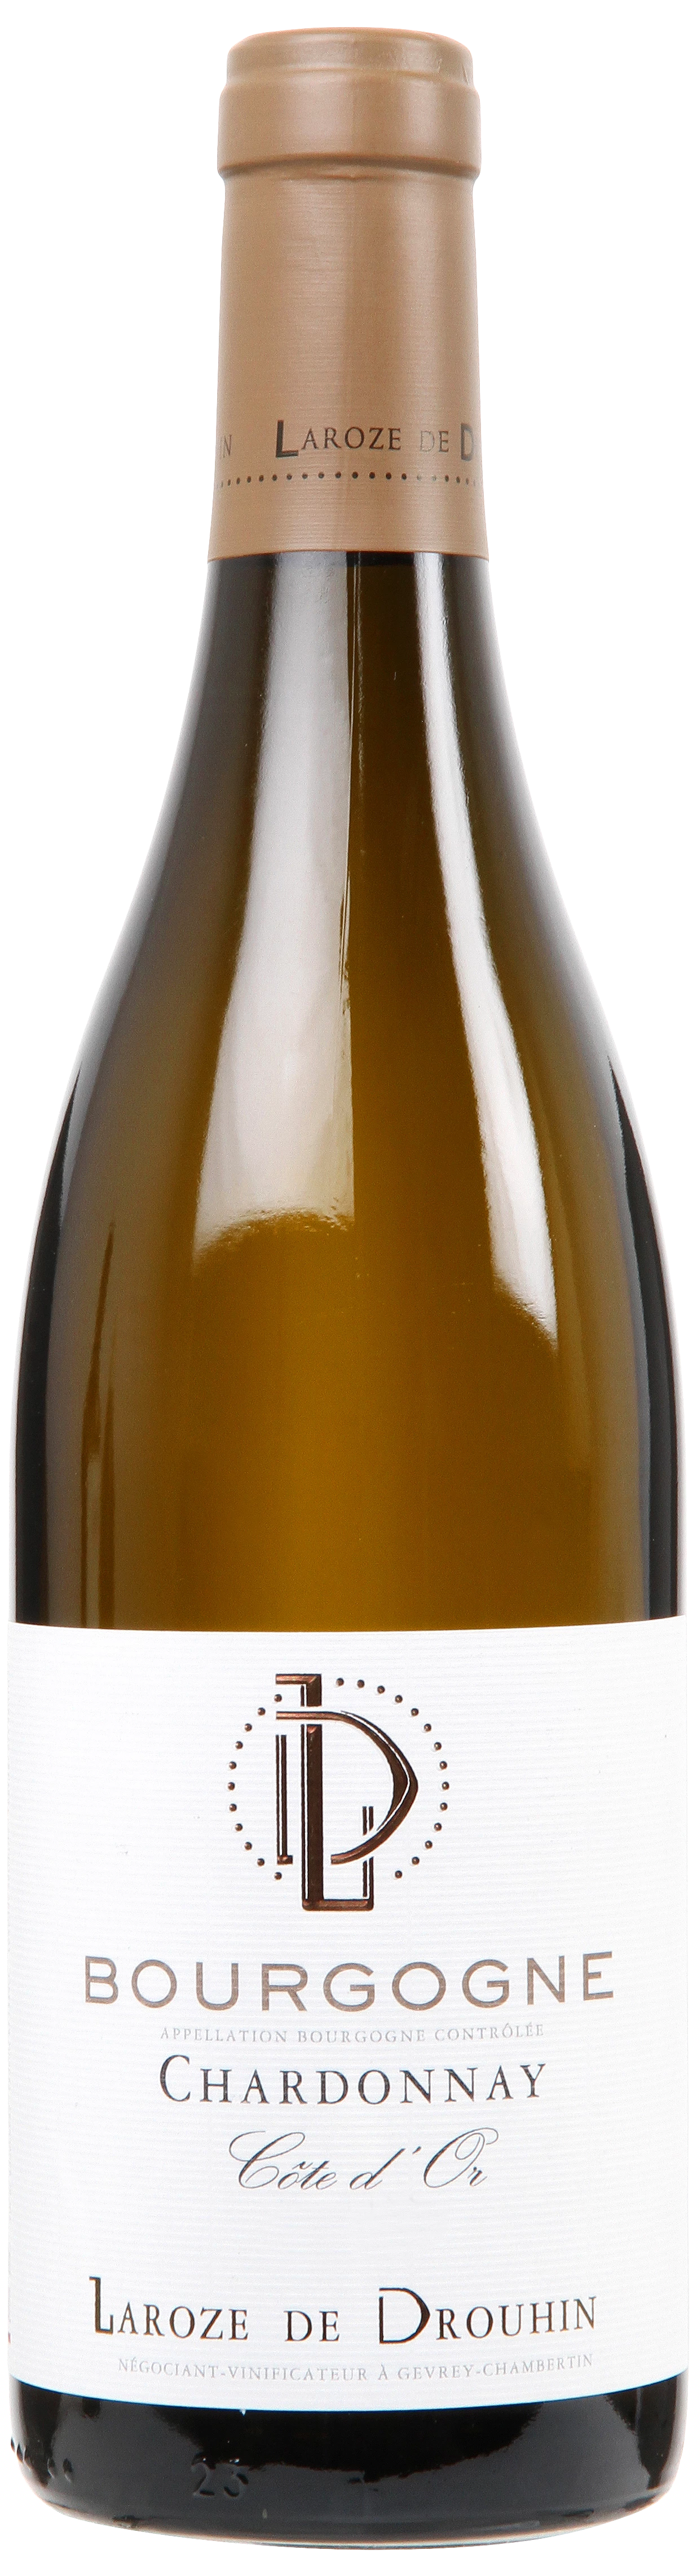 Løgismose Hvidvin Bourgogne Maison Laroze de Drouhin Cote D'or Chardonnay 2019 - 219918